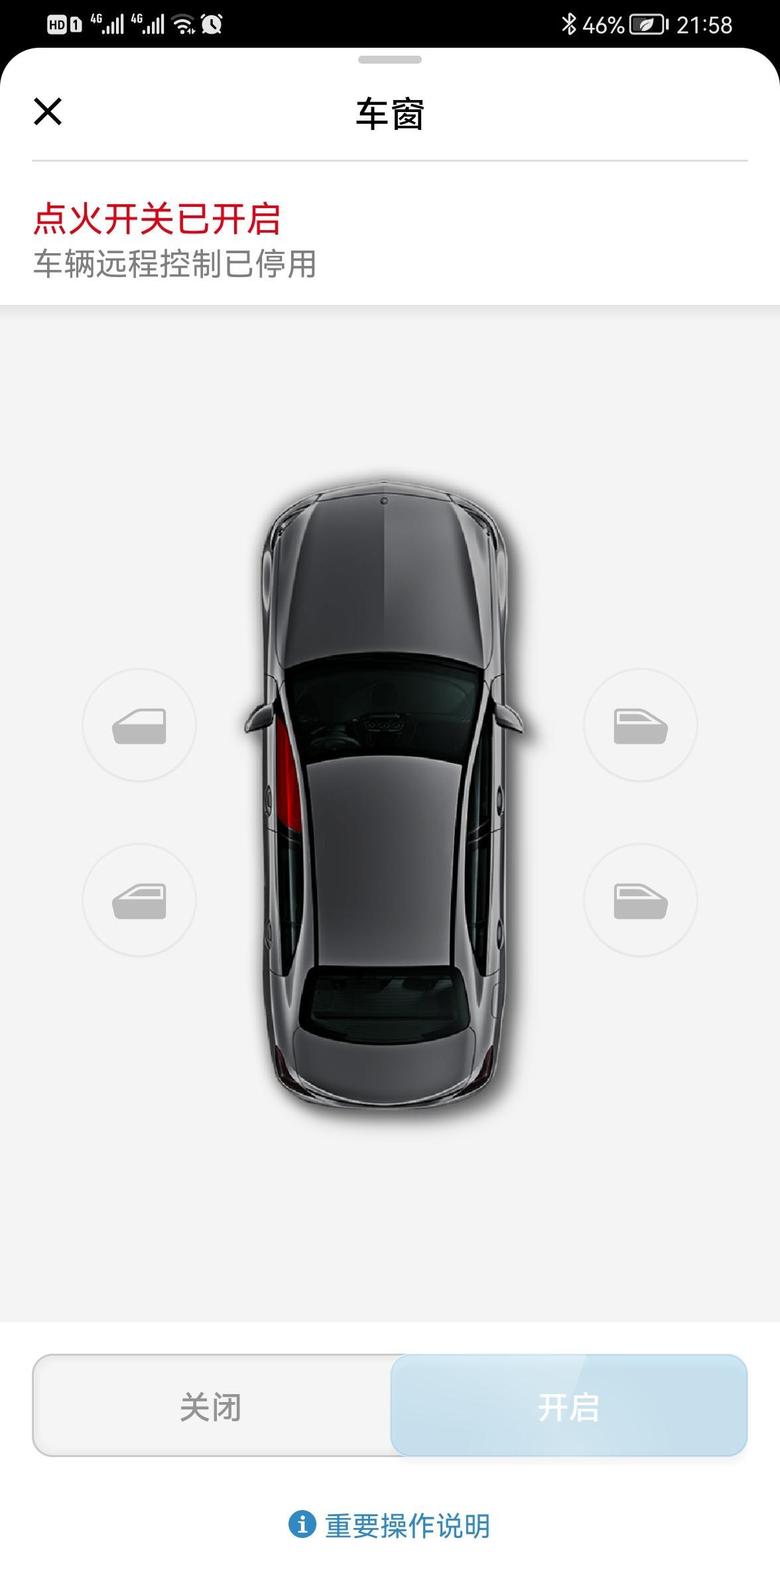 奔驰glc 车子明明锁上了，为什么app上还是显示车窗打开？上面显示3小时前更新，这个是什么更新频率？谢谢大家